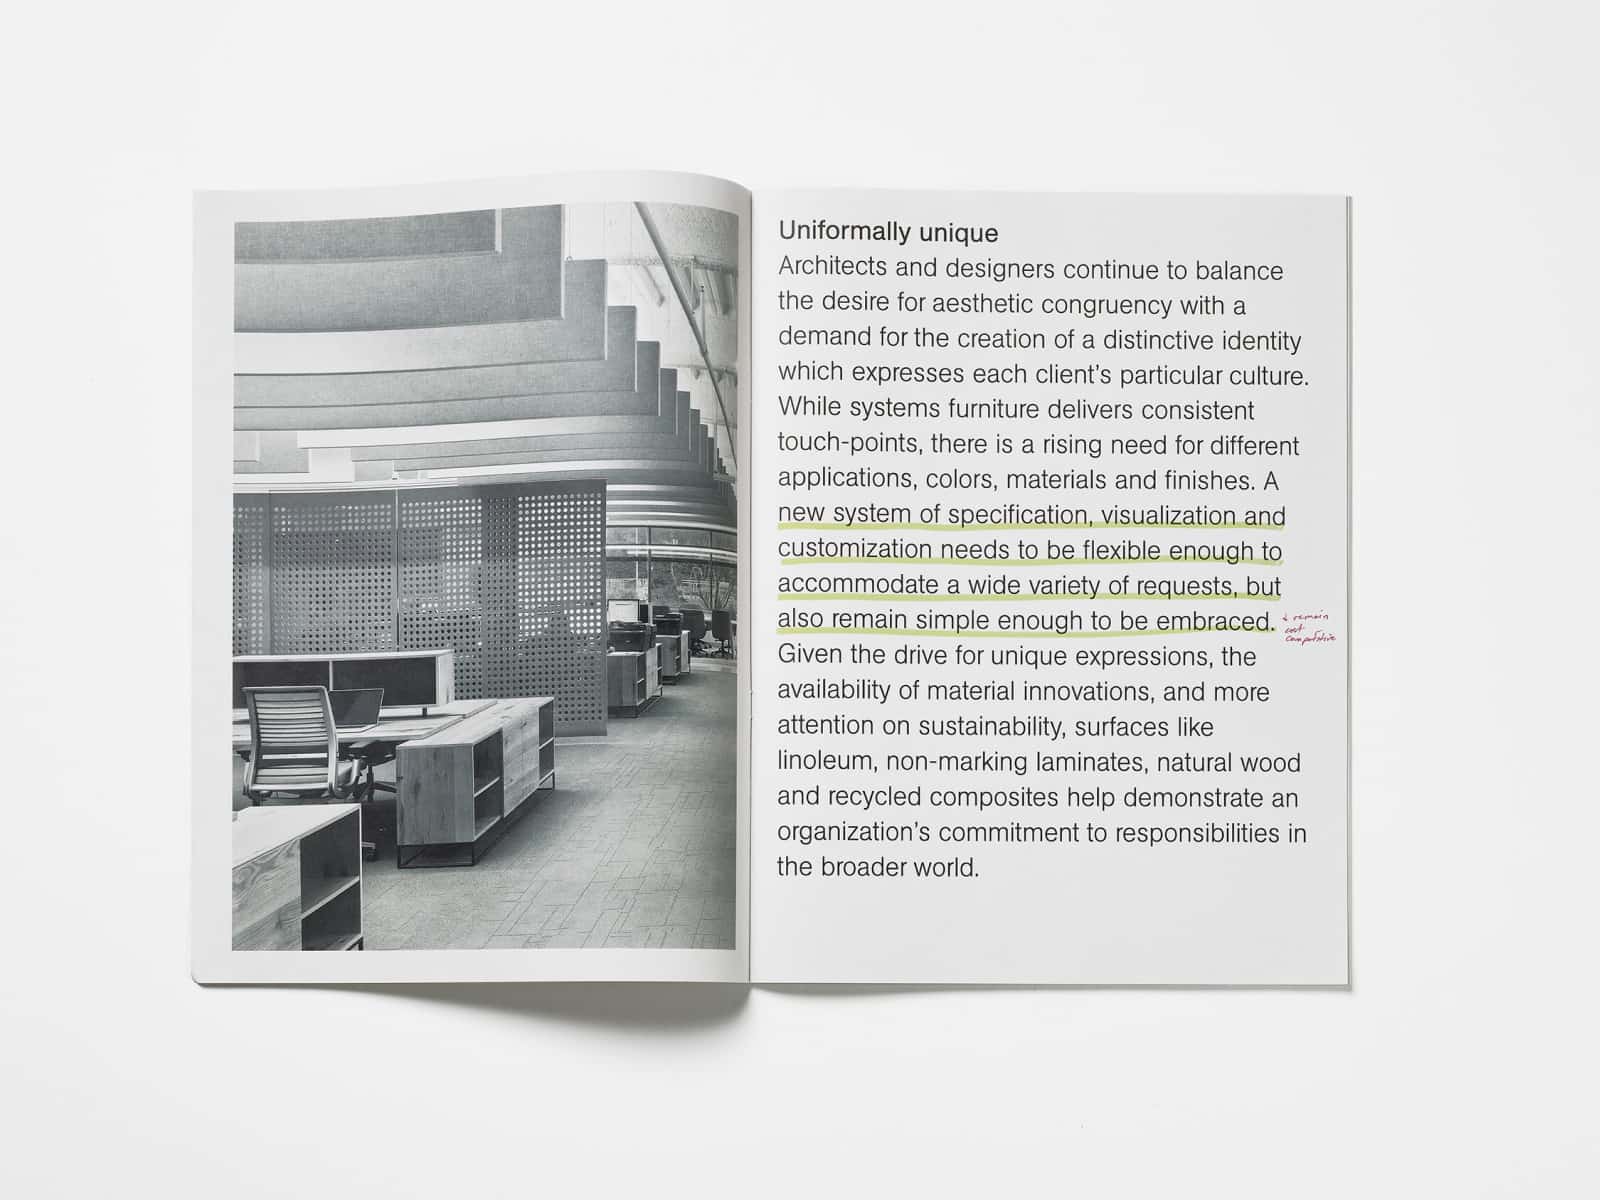 Imagen de páginas de la revista de diseño Horizon donde se presentan productos que formarían parte de la Colección espacio de trabajo OE1.